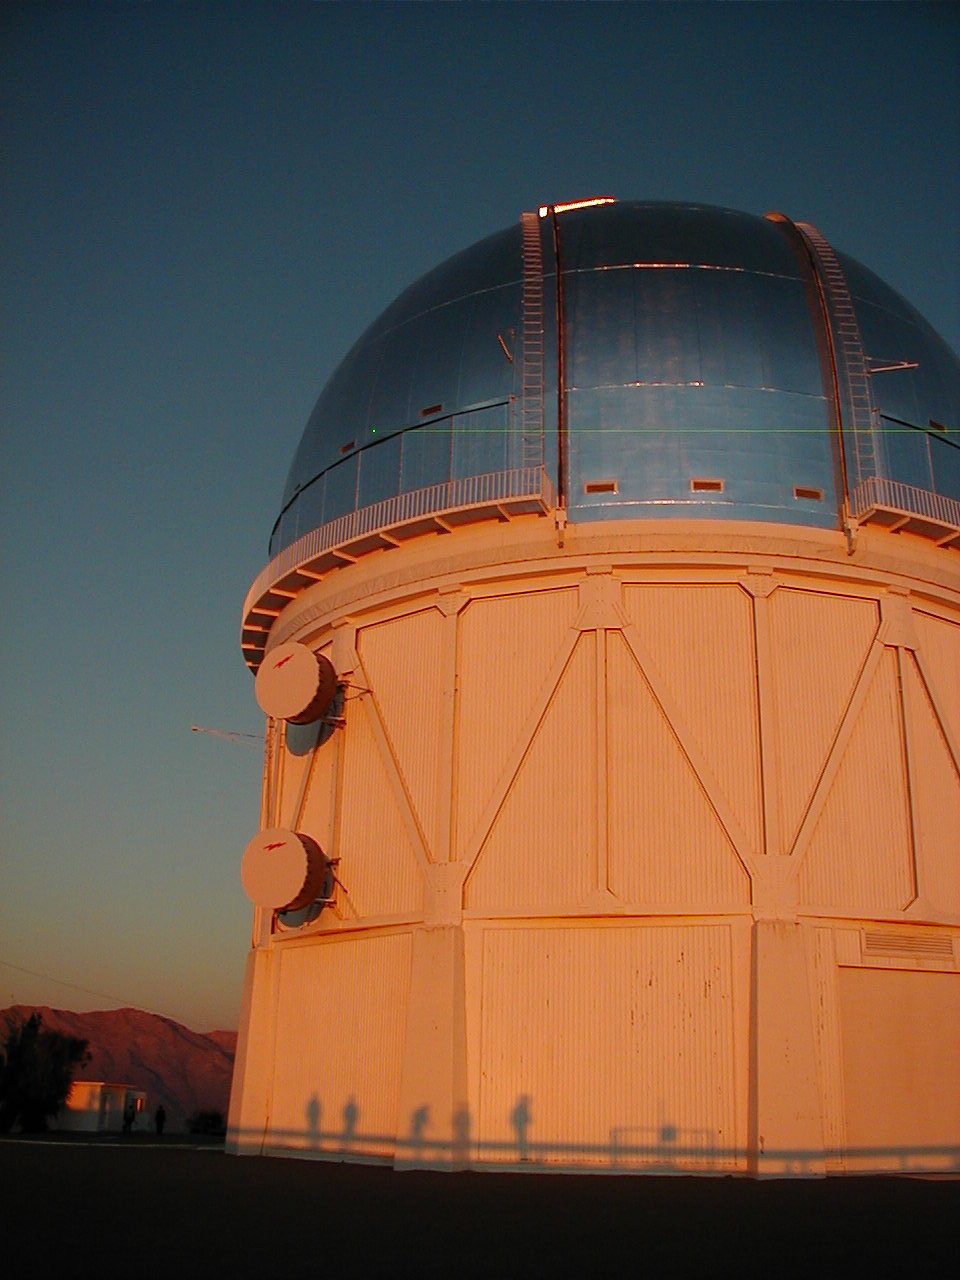 [CTIO 4-meter telescope]